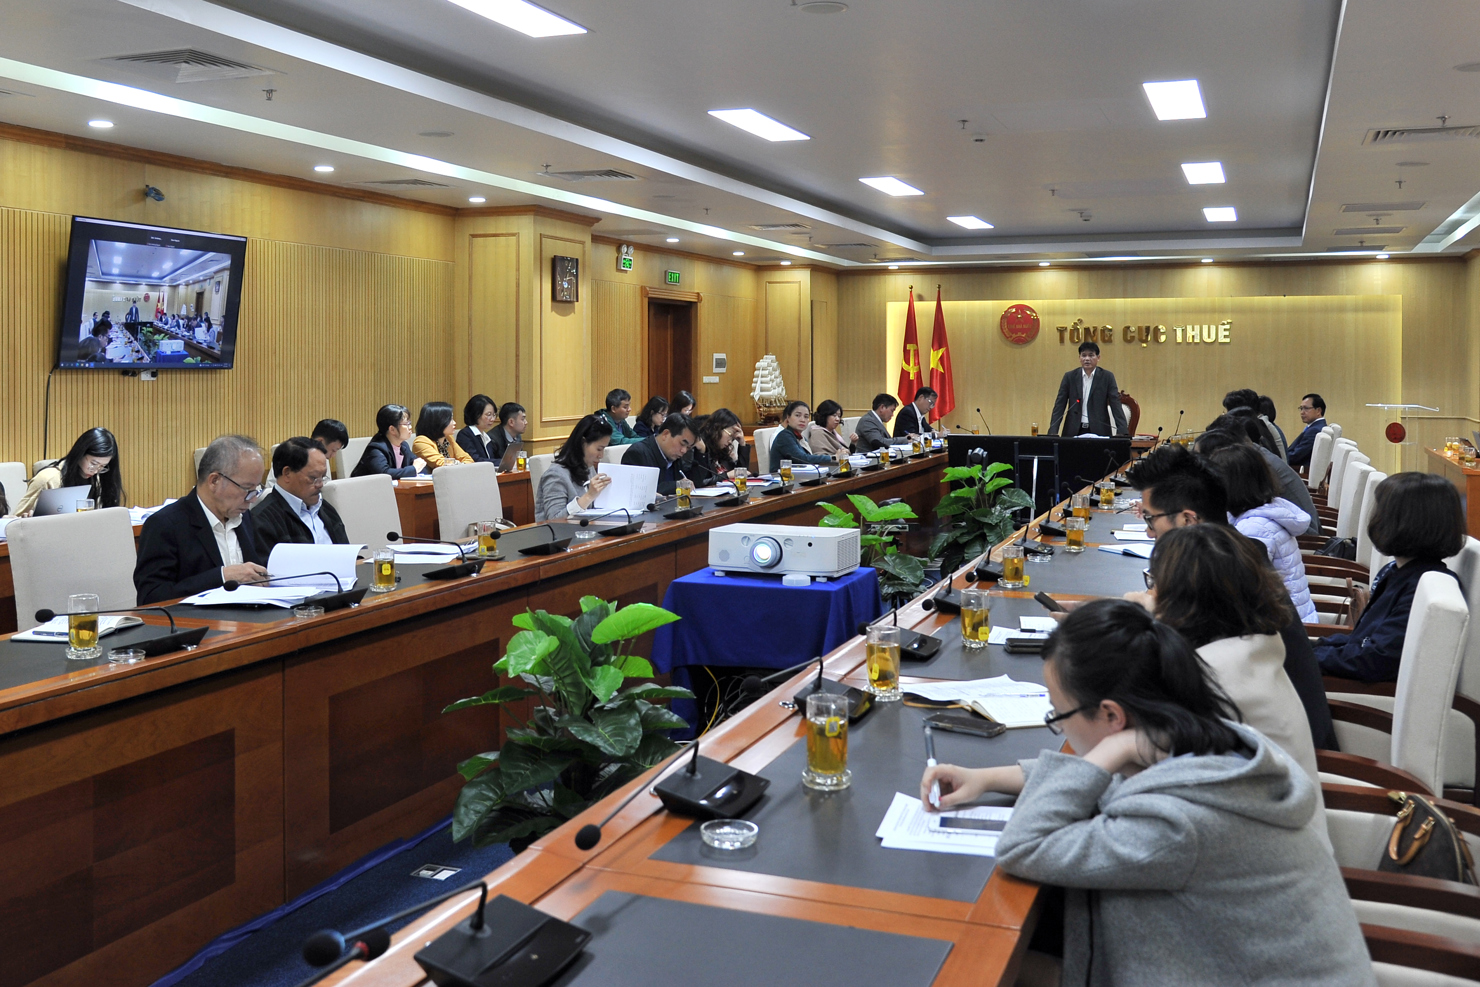 Tổng cục Thuế tổ chức cuộc họp trao đổi kinh nghiệm với các doanh nghiêp nước ngoài tại Việt Nam thuộc đối tượng có liên quan thuế suất tối thiểu toàn cầu.